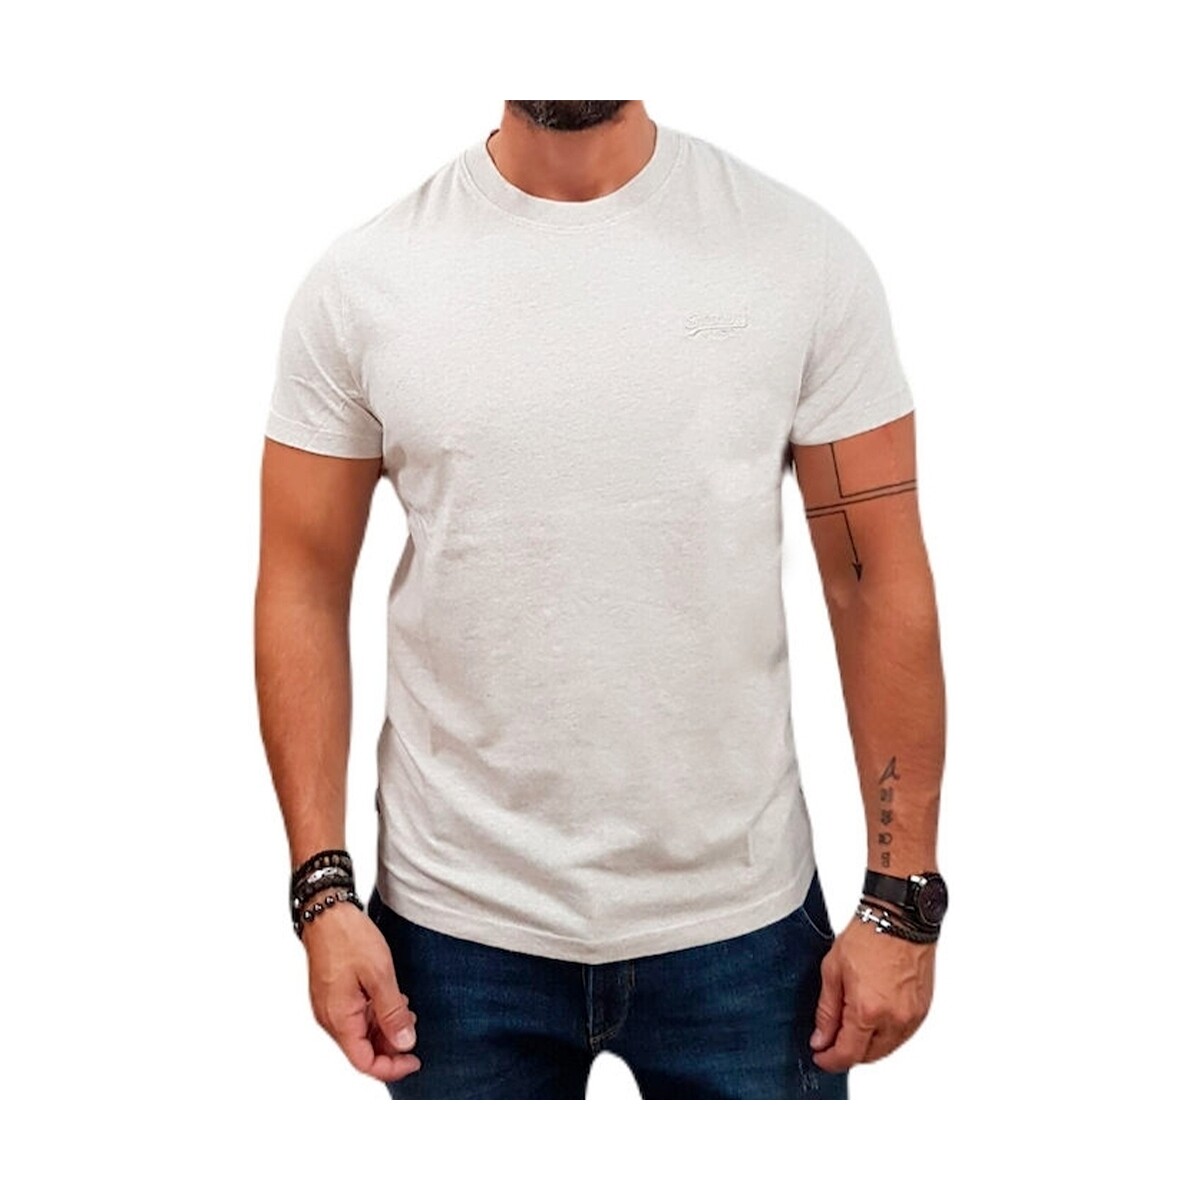 Vêtements Homme T-shirts manches courtes Superdry Vintage Blanc